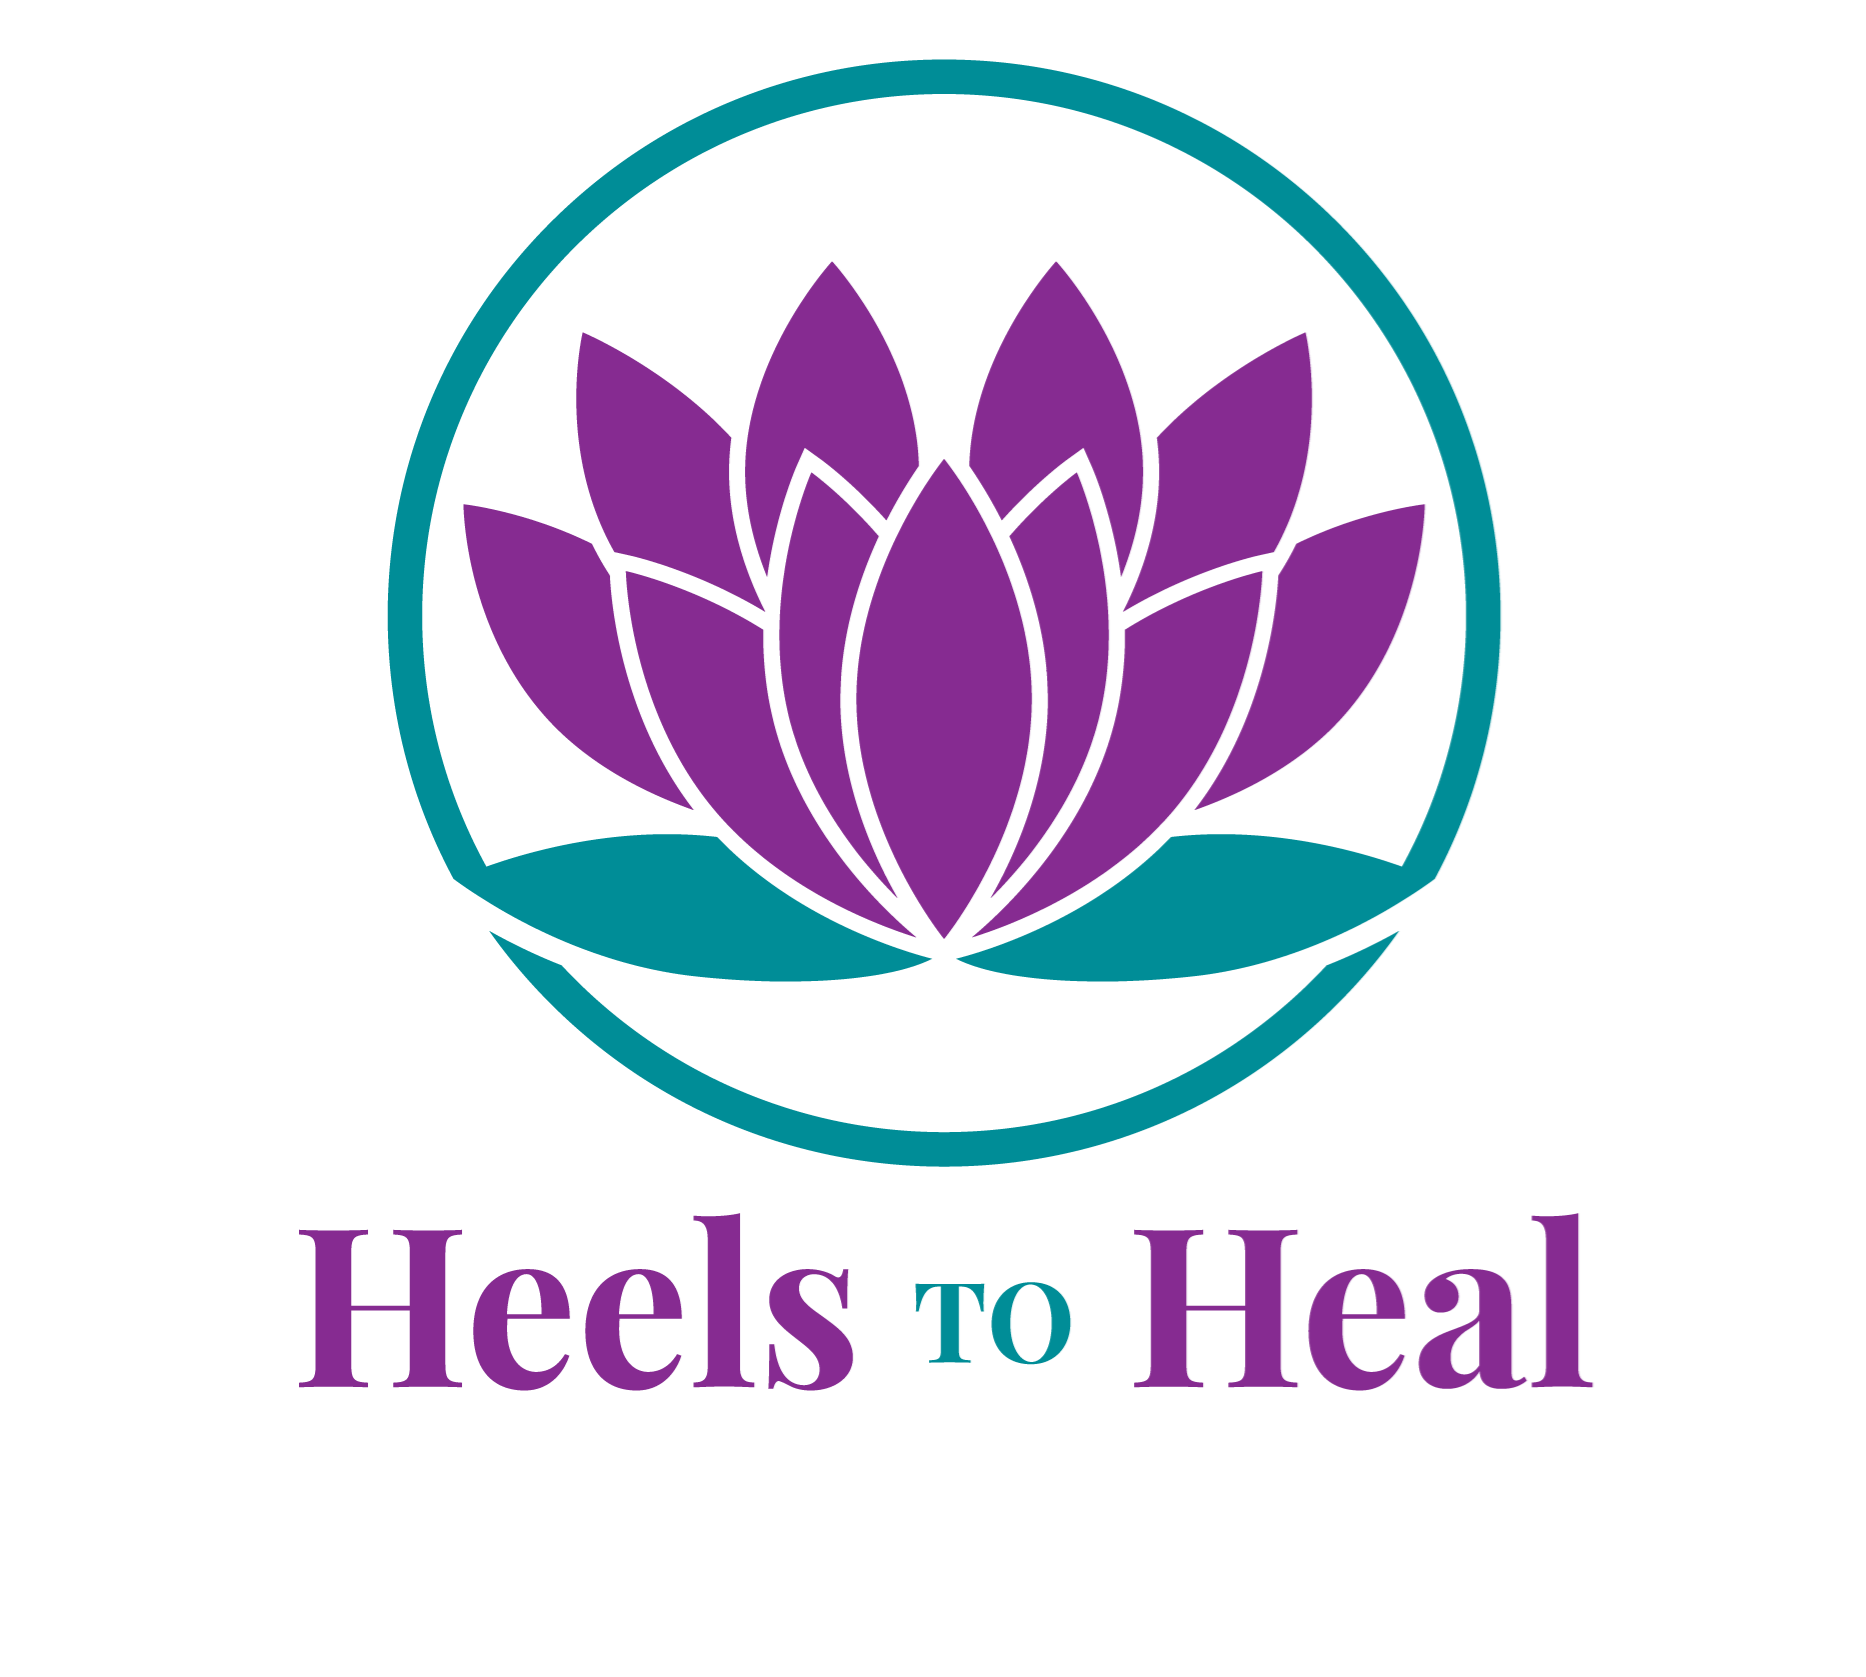 Heels to Heal